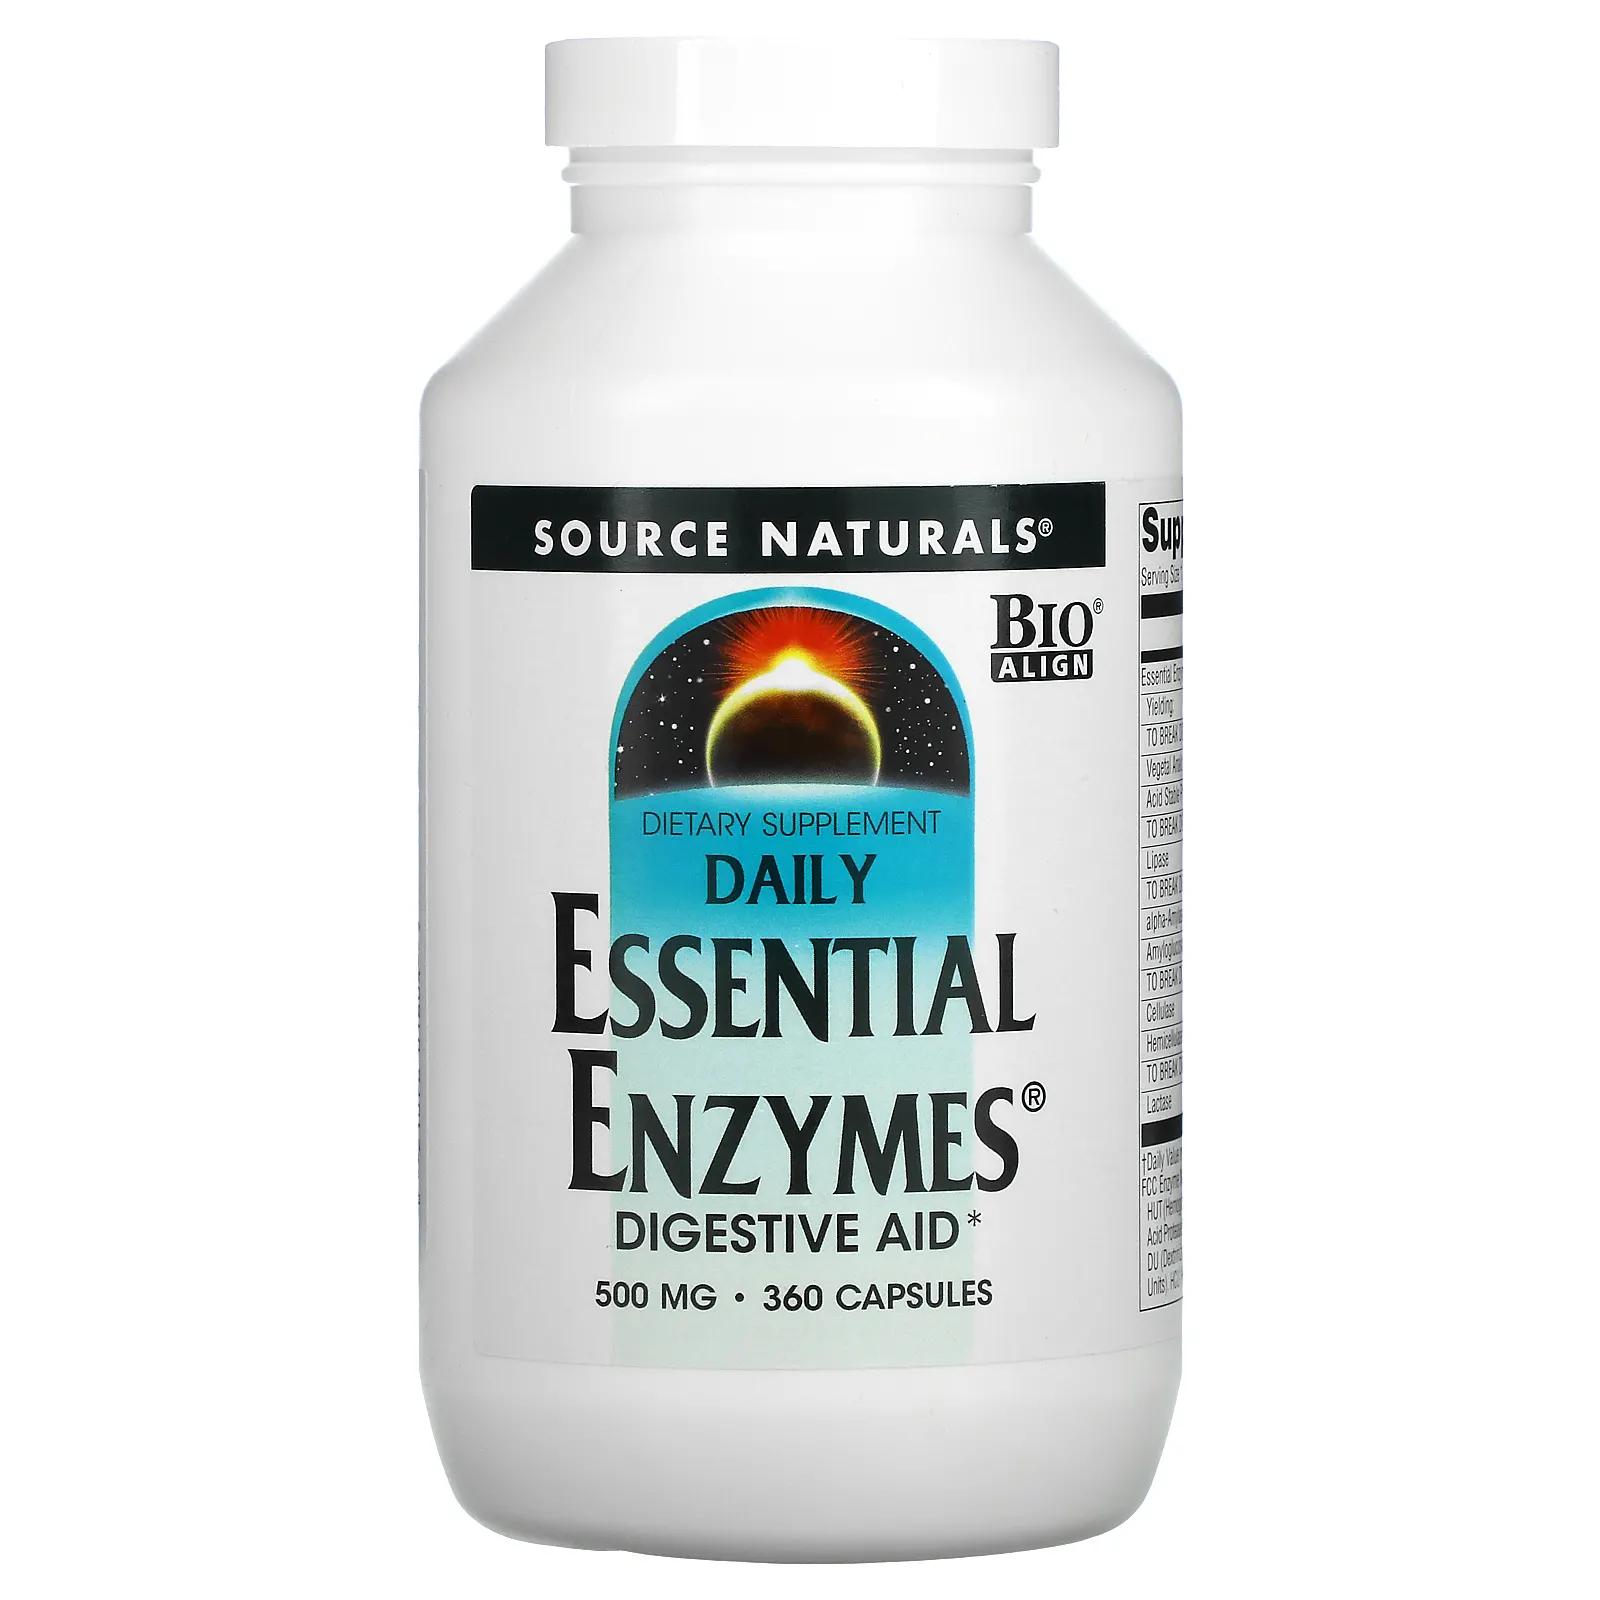 Source Naturals Daily Essential Enzymes пищеварительные ферменты для ежедневного использования 500 мг 360 капсул пищеварительные ферменты daily essential enzymes 500 мг 360 капсул source naturals